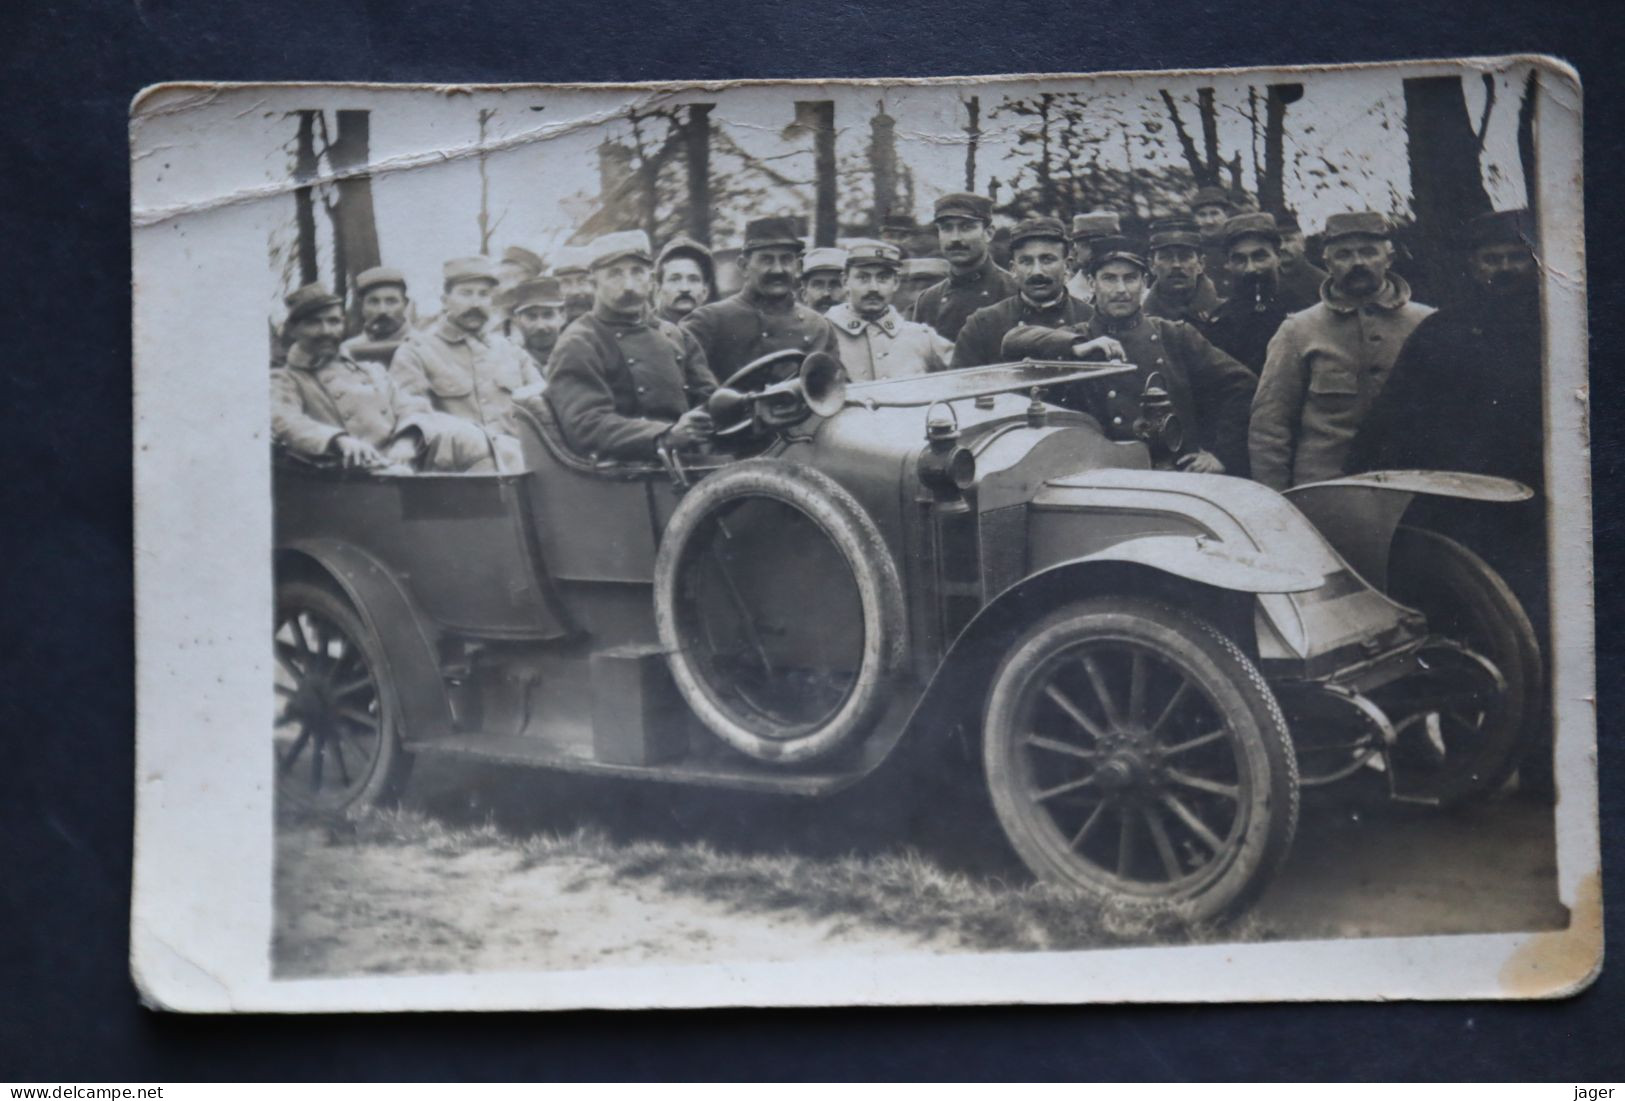 Carte Photo 1914 1918   Poilus Automobile Gros Plan  WWI - Guerre, Militaire